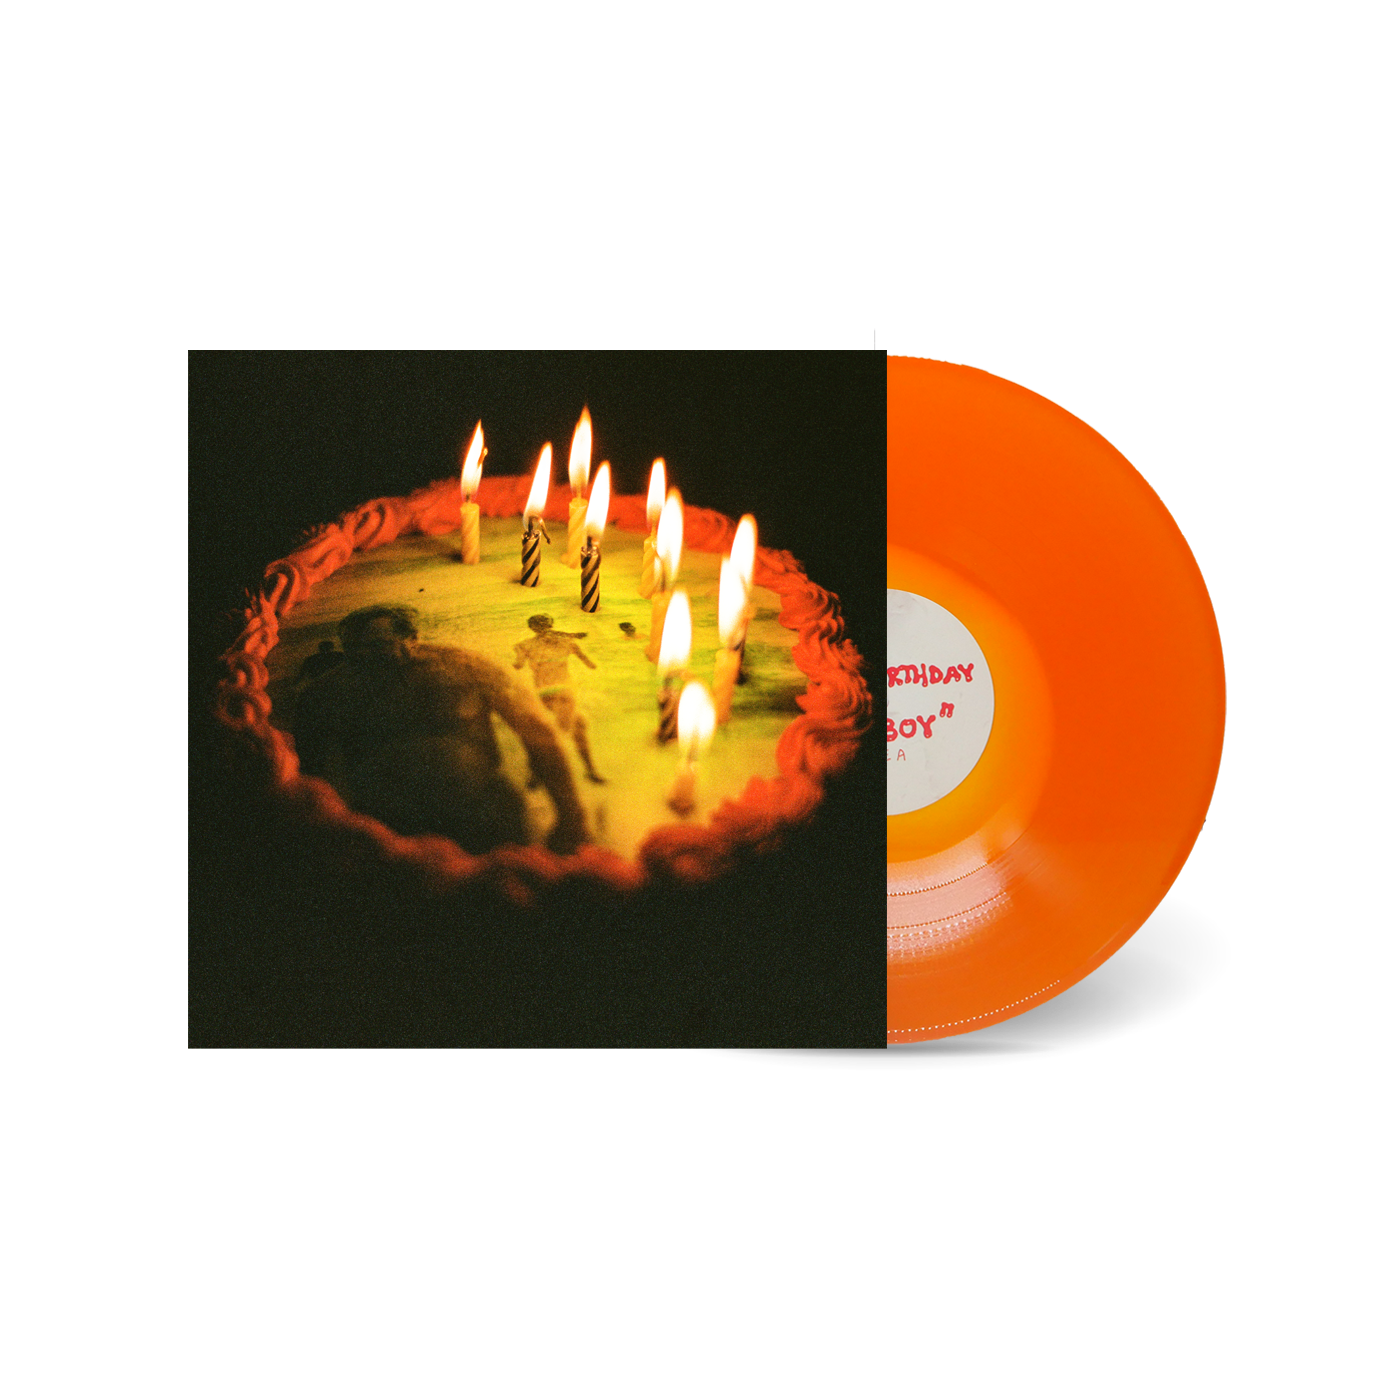 Happy Birthday, Ratboy LP